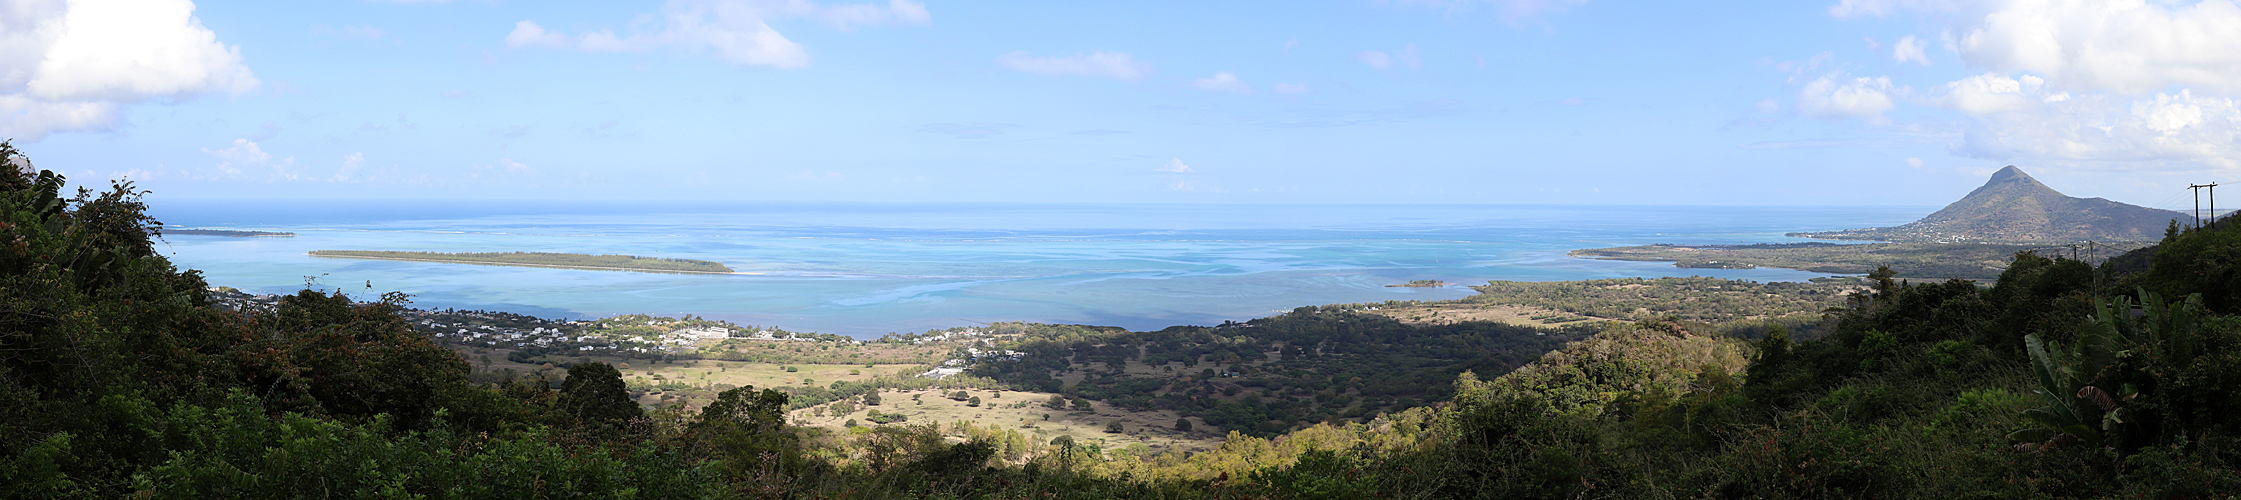 RODRIGUES & MAURICE - photo panoramique de l île aux Bénitiers & de la Tourelle de Tamarin (Maurice)